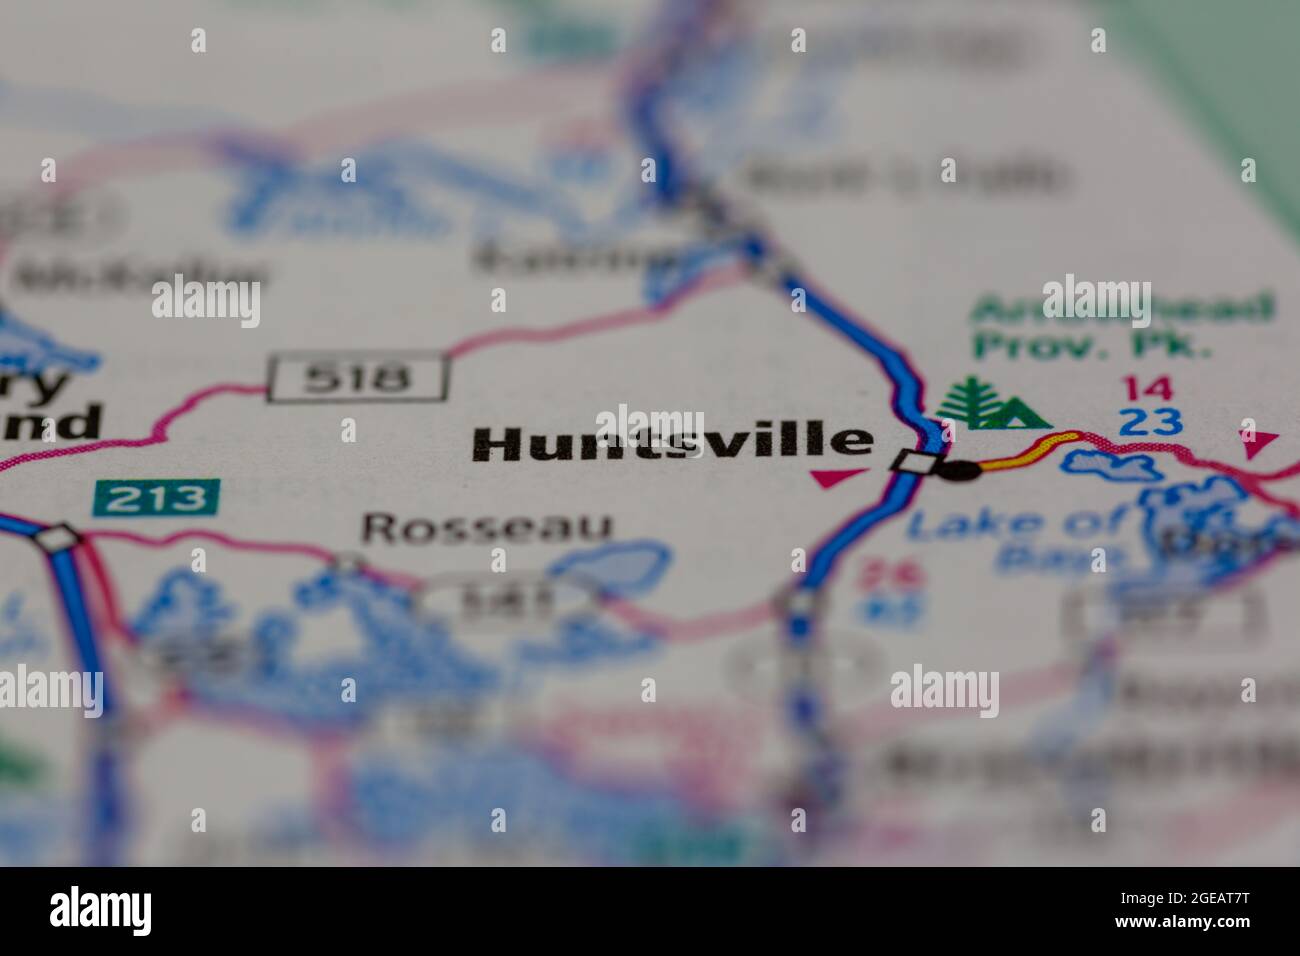 Huntsville, Ontario, Kanada, auf einer Straßenkarte oder Geografie-Karte angezeigt Stockfoto